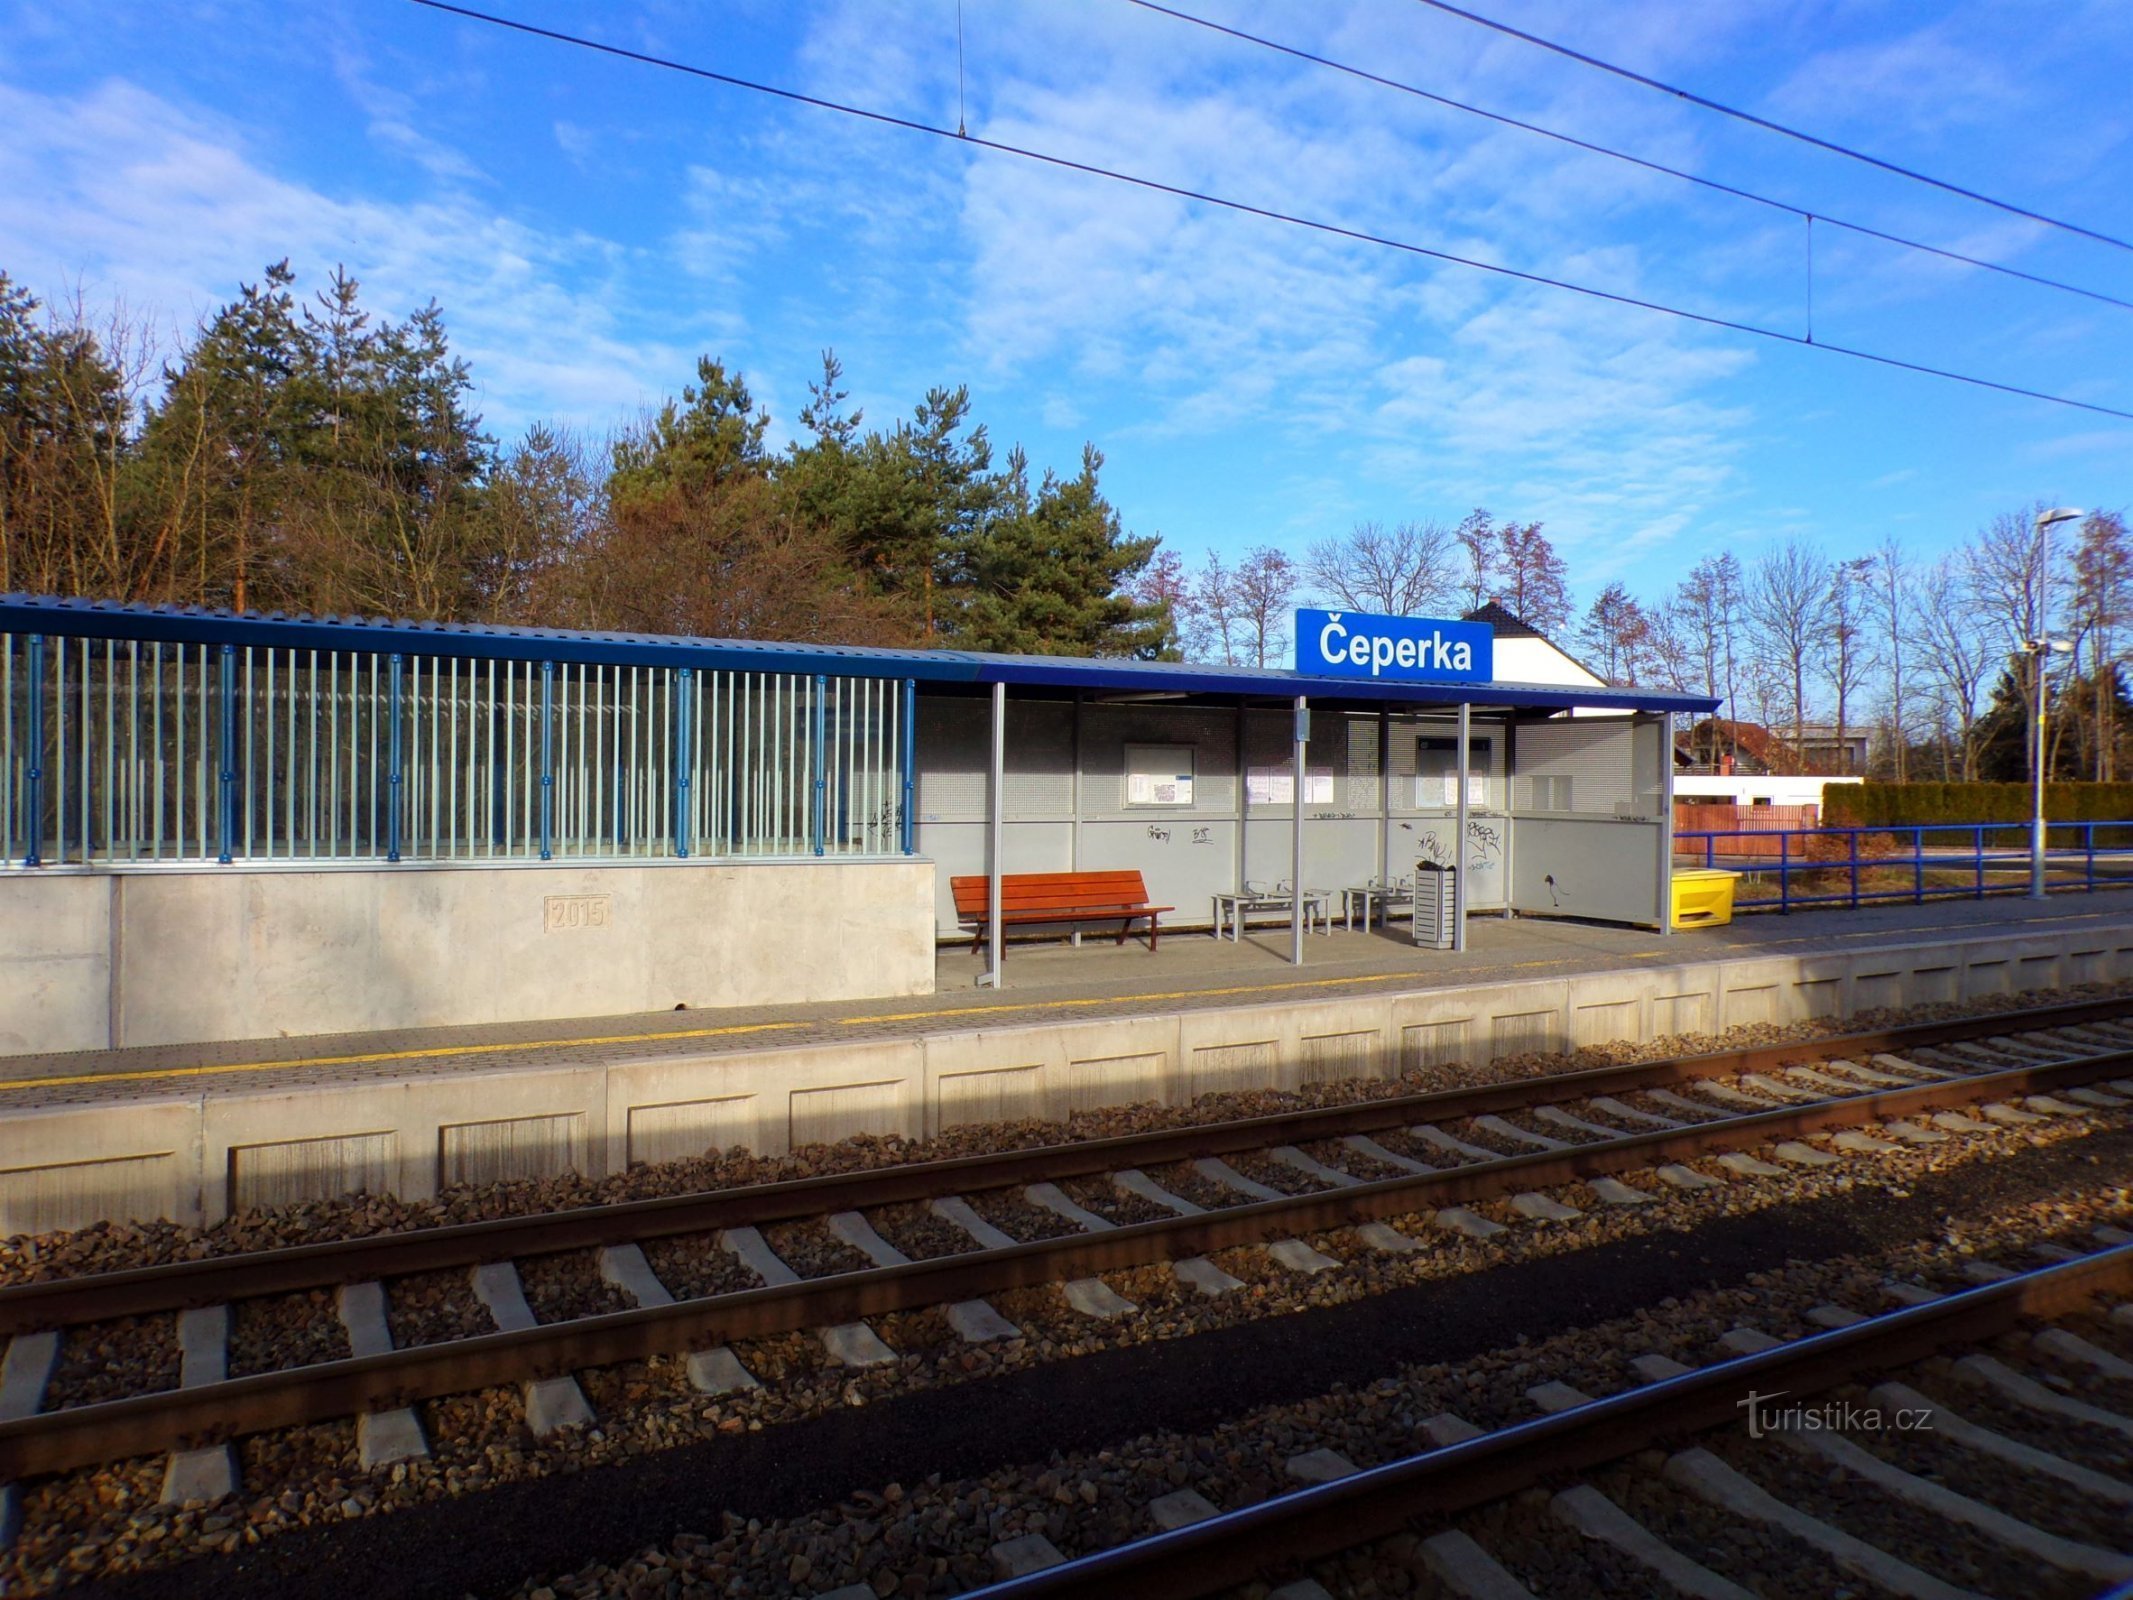 火车站 (Čeperka, 18.2.2022/XNUMX/XNUMX)